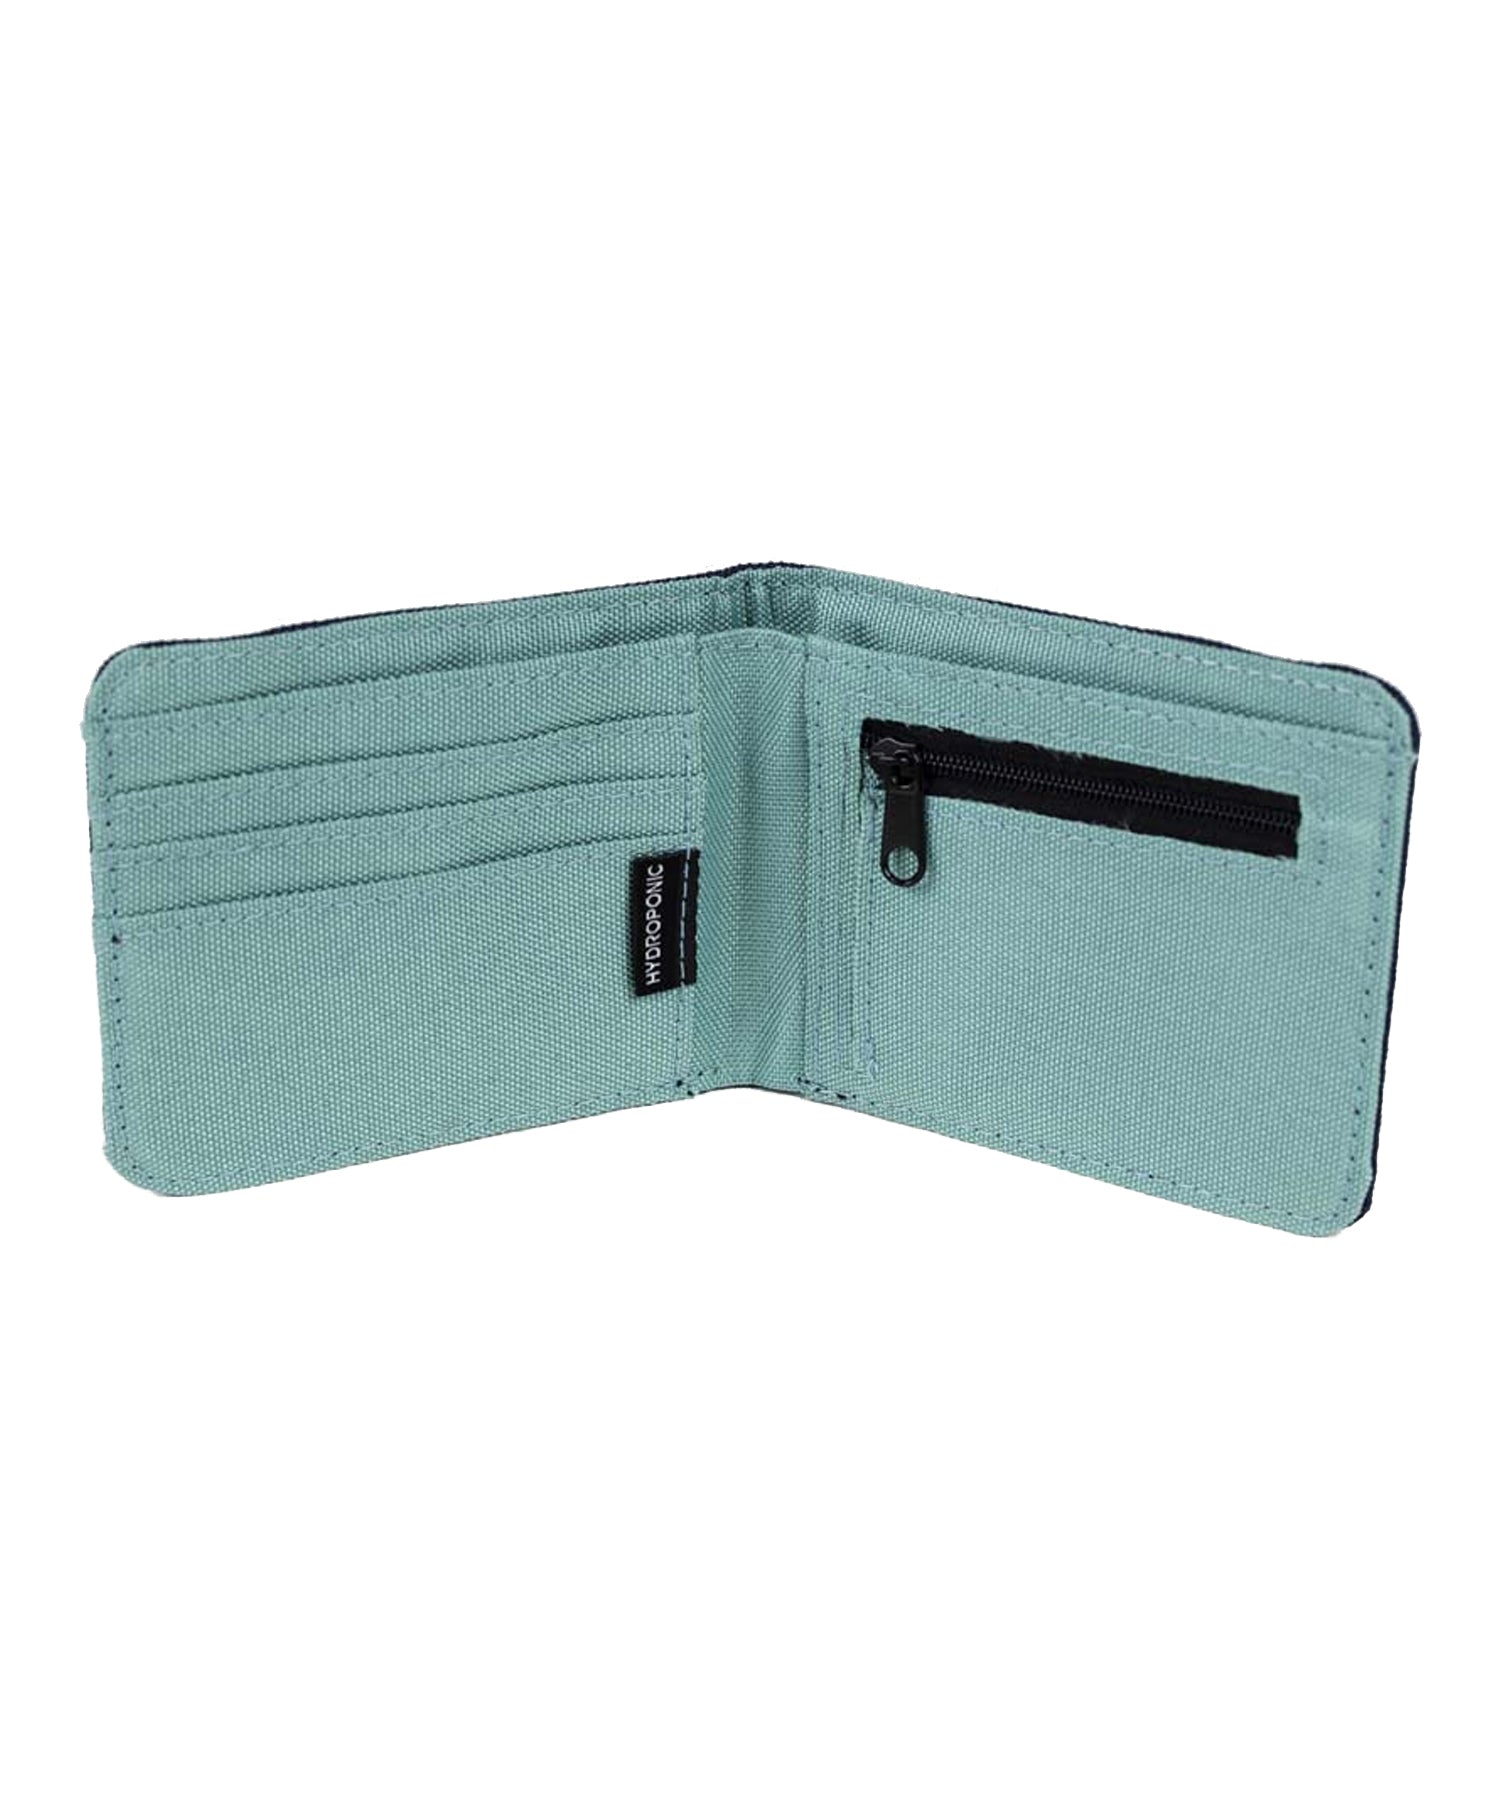 cartera de loneta-hydroponic-bluemont-color azul mineral y con cinta anti apertura y logo hydroponic .